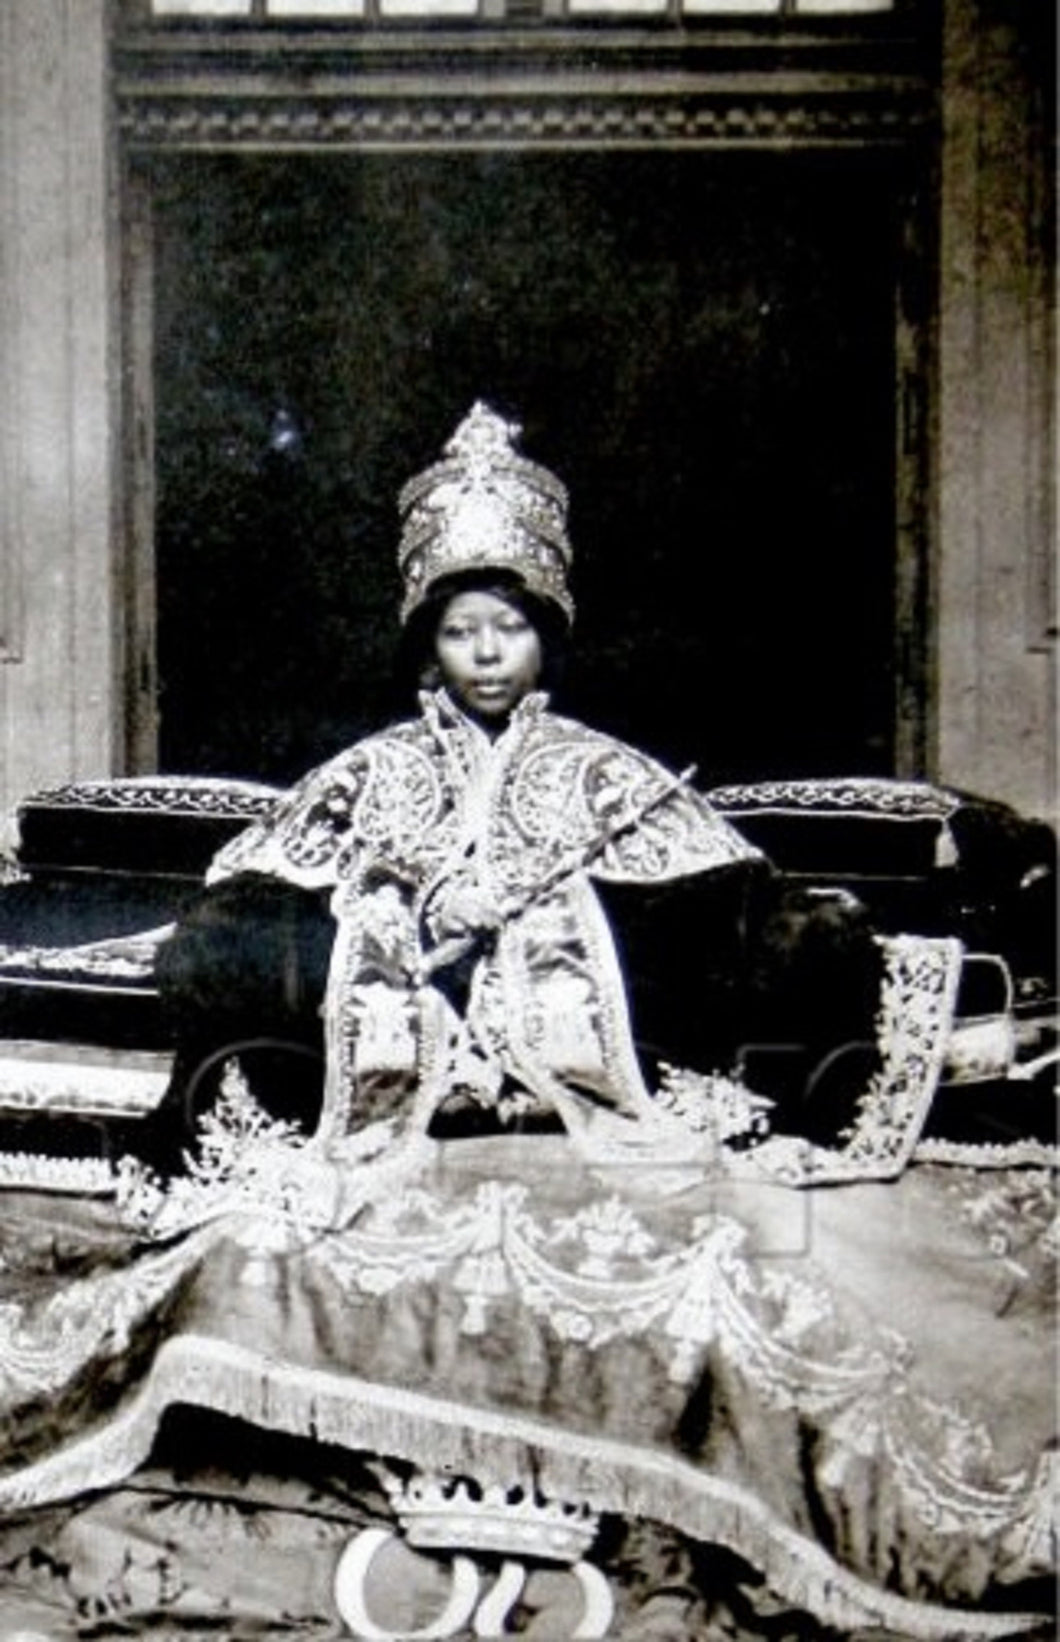 Zauditu-African Queen